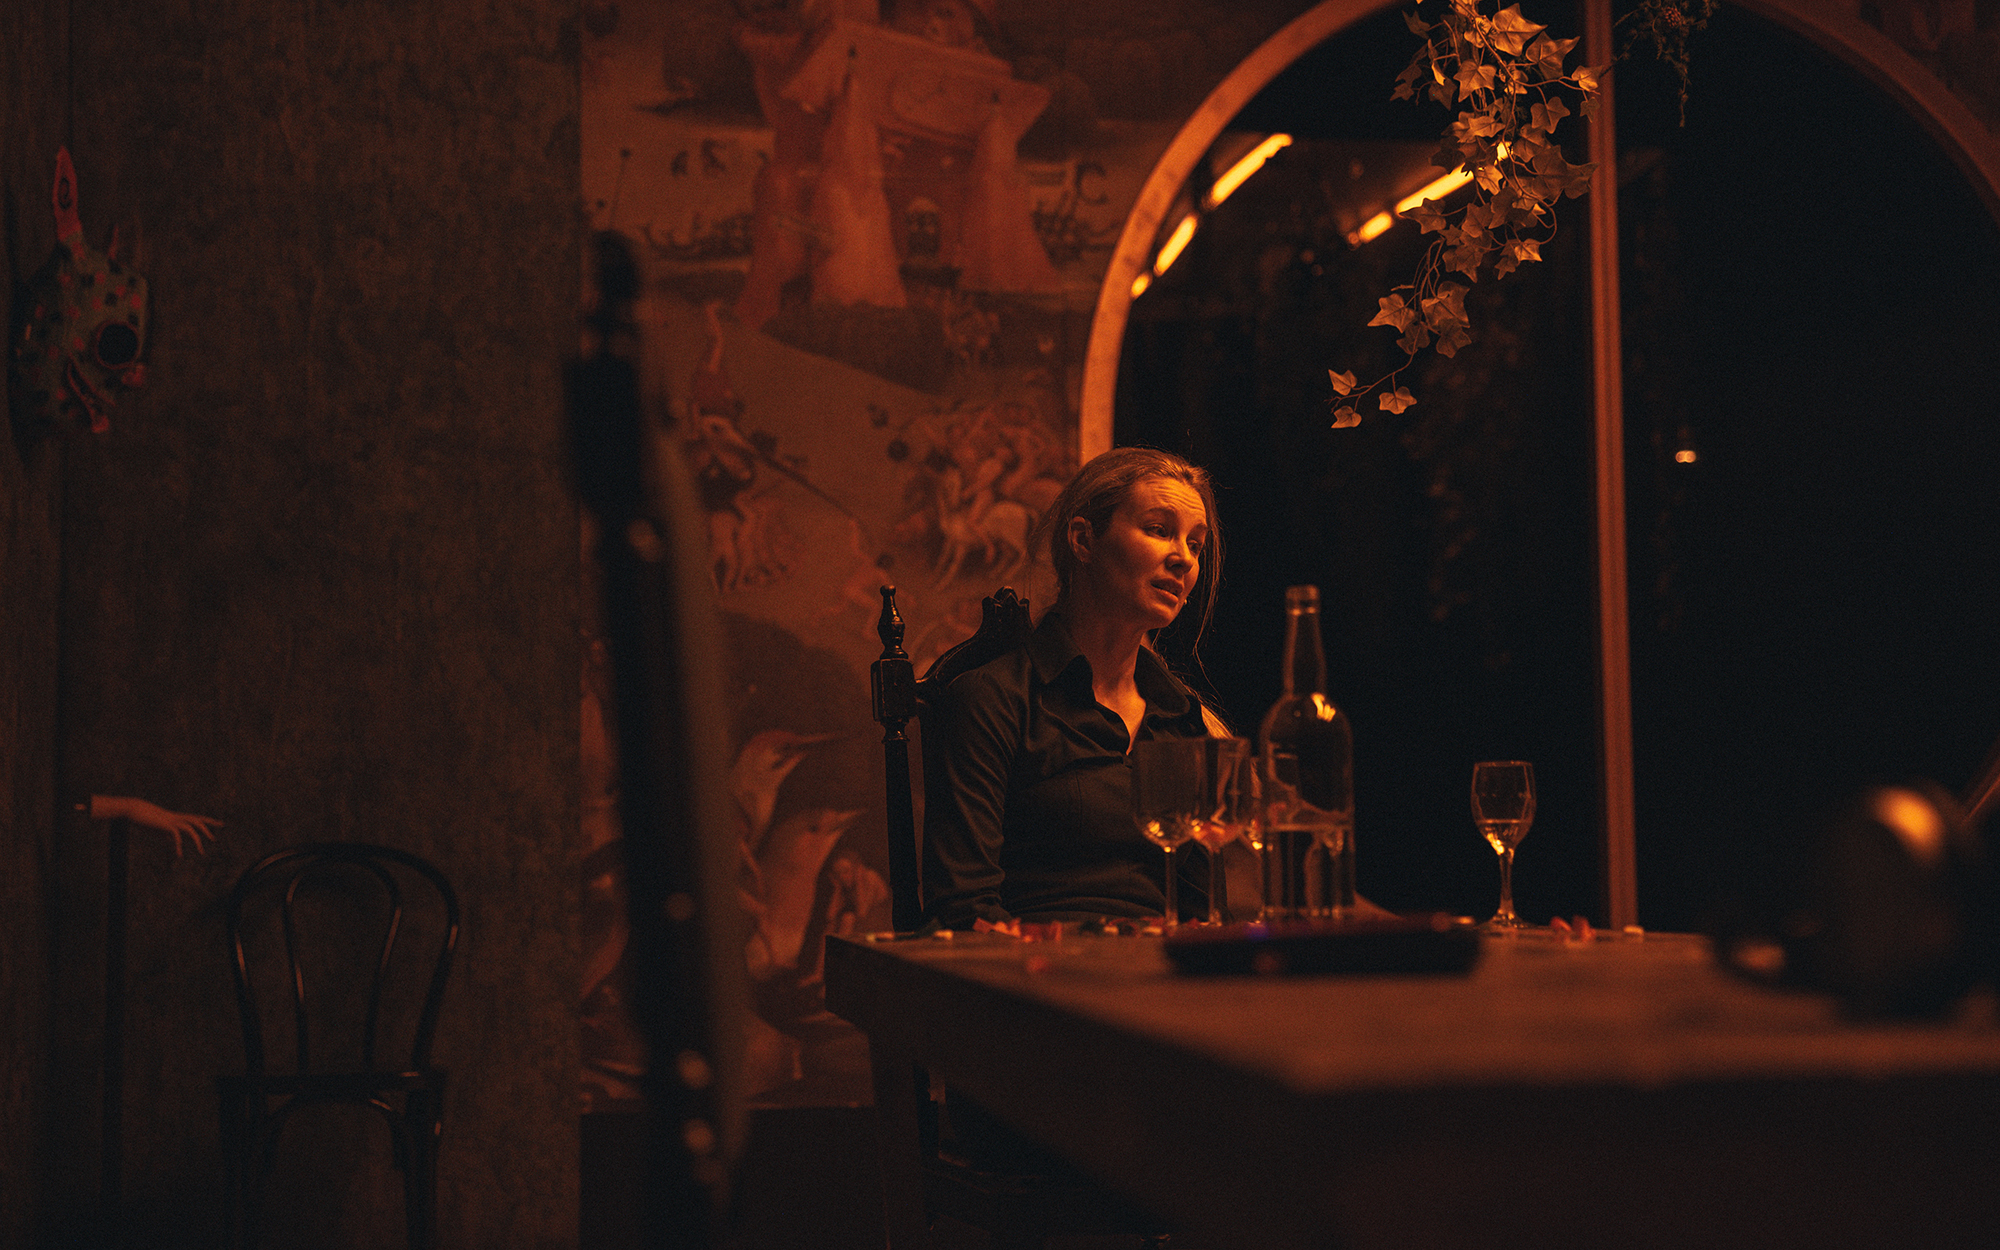 Ženska (Iva Krajnc Bagola) sedi za jedilno mizo, na kateri je nekaj kozarcev, pa tudi steklenica, prenosni računalnik, slušalke in konfeti. Videti je obupana, nekaj žalostno razlaga. V ozadju je veliko stekleno okno, s stropa visi nekaj zelenja.